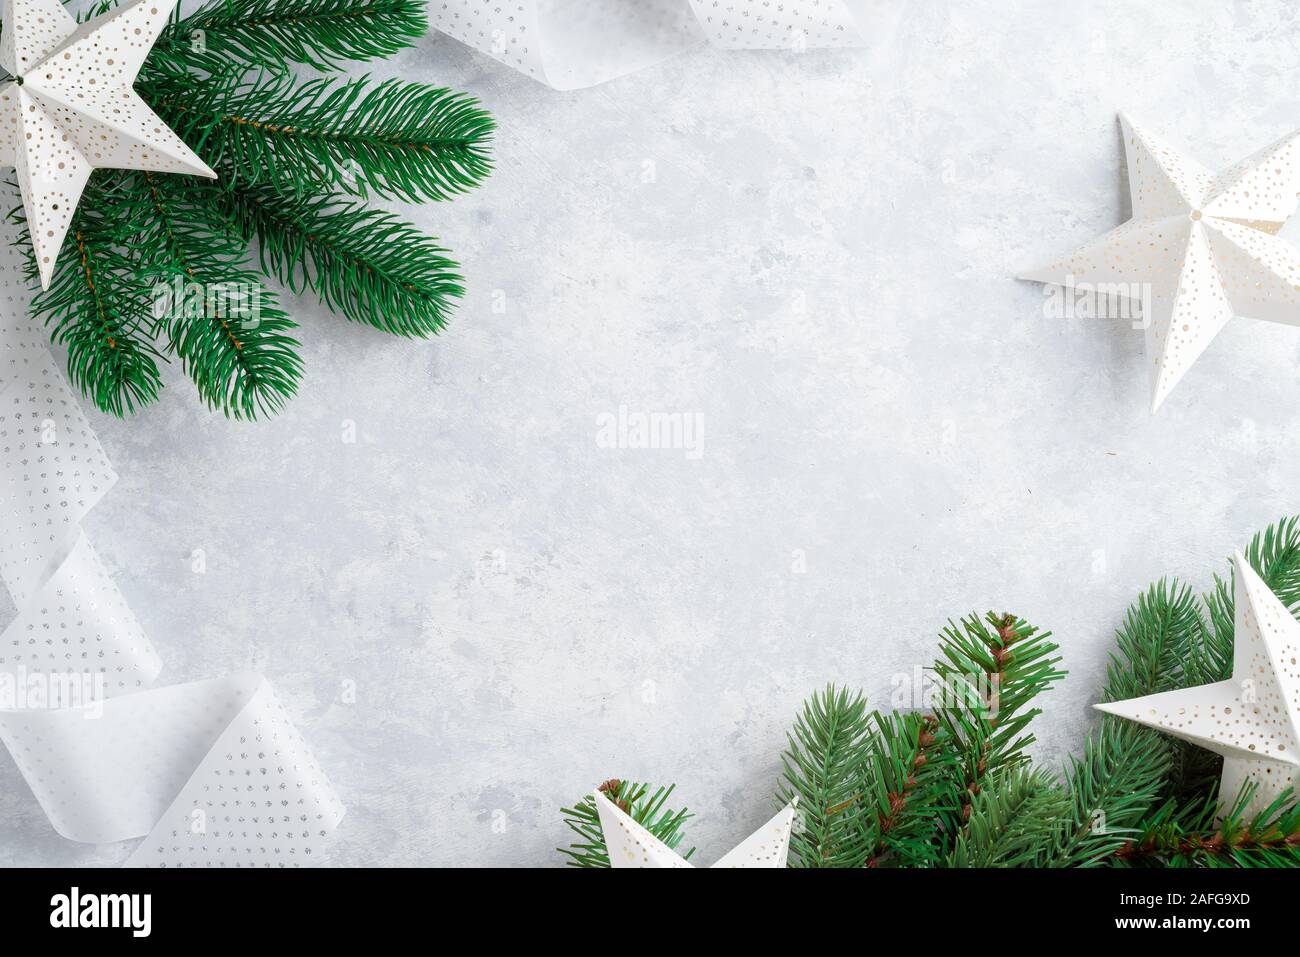 Fond de Noël, branches d'arbre de Noël, blanc et bleu, les étoiles Banque D'Images